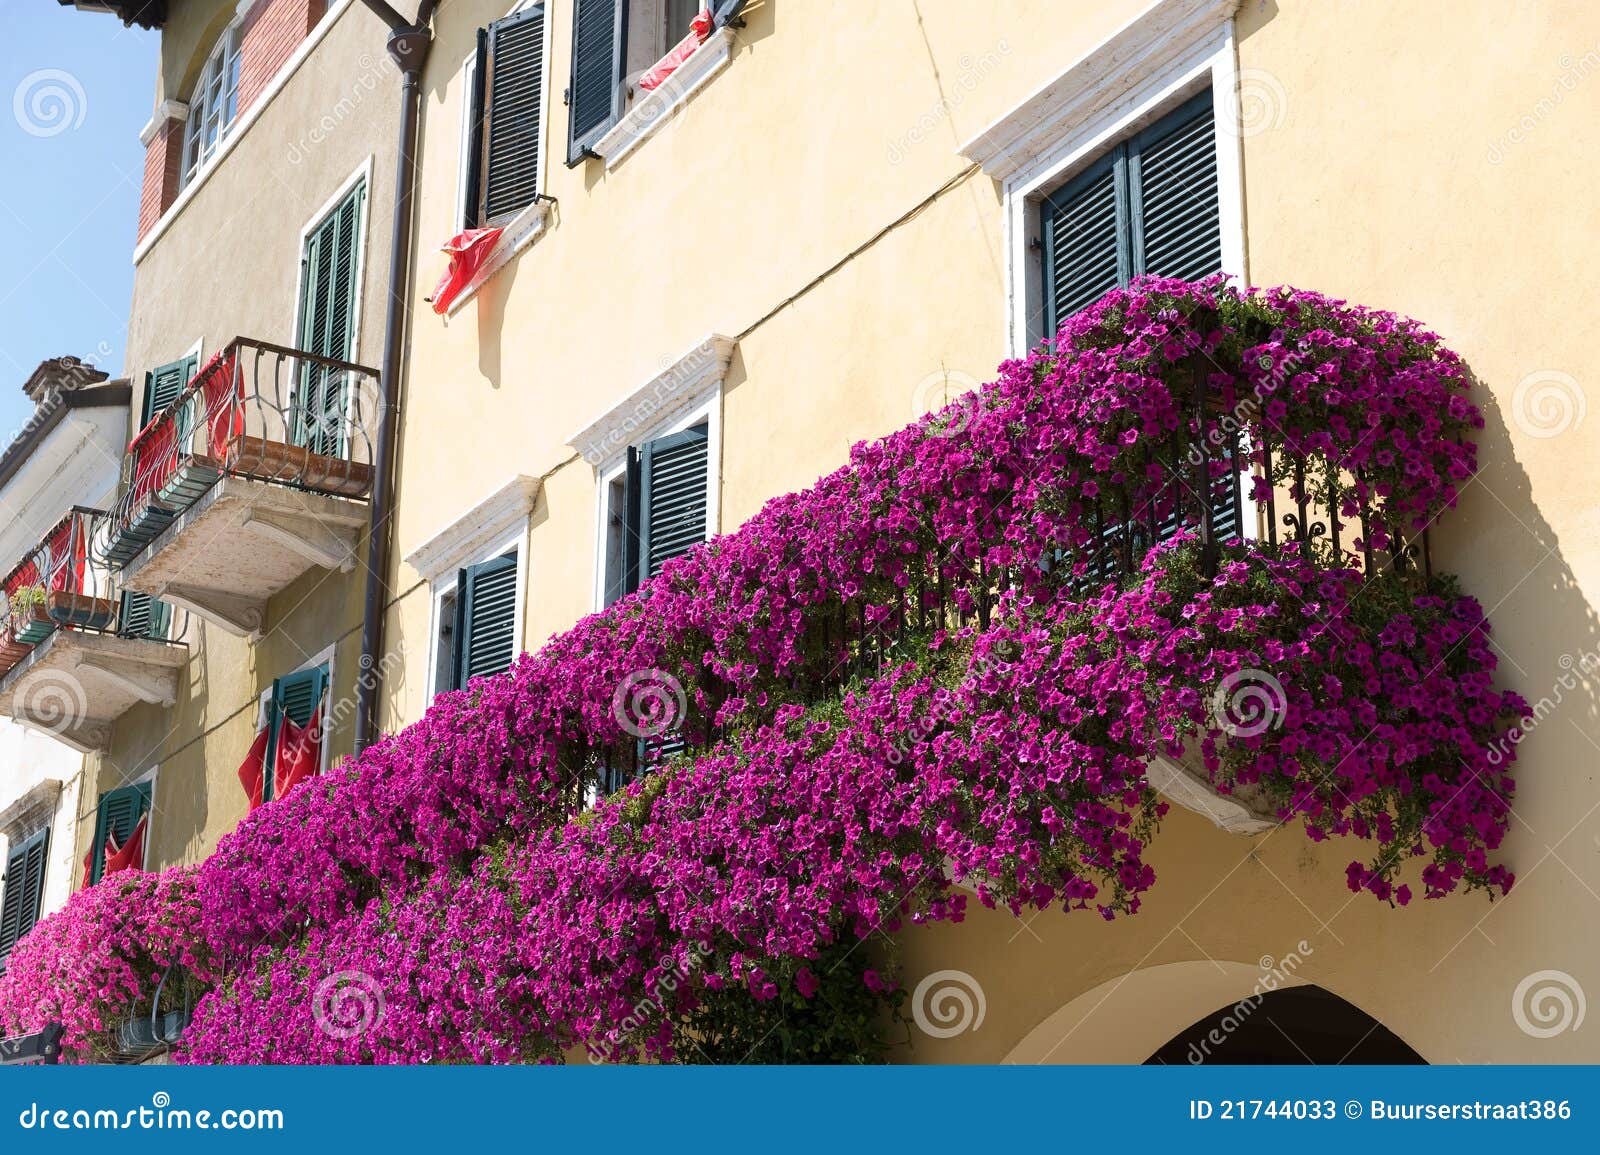 goud Ondenkbaar Schipbreuk Bloemen op balkon stock afbeelding. Image of zomer, landgoed - 21744033